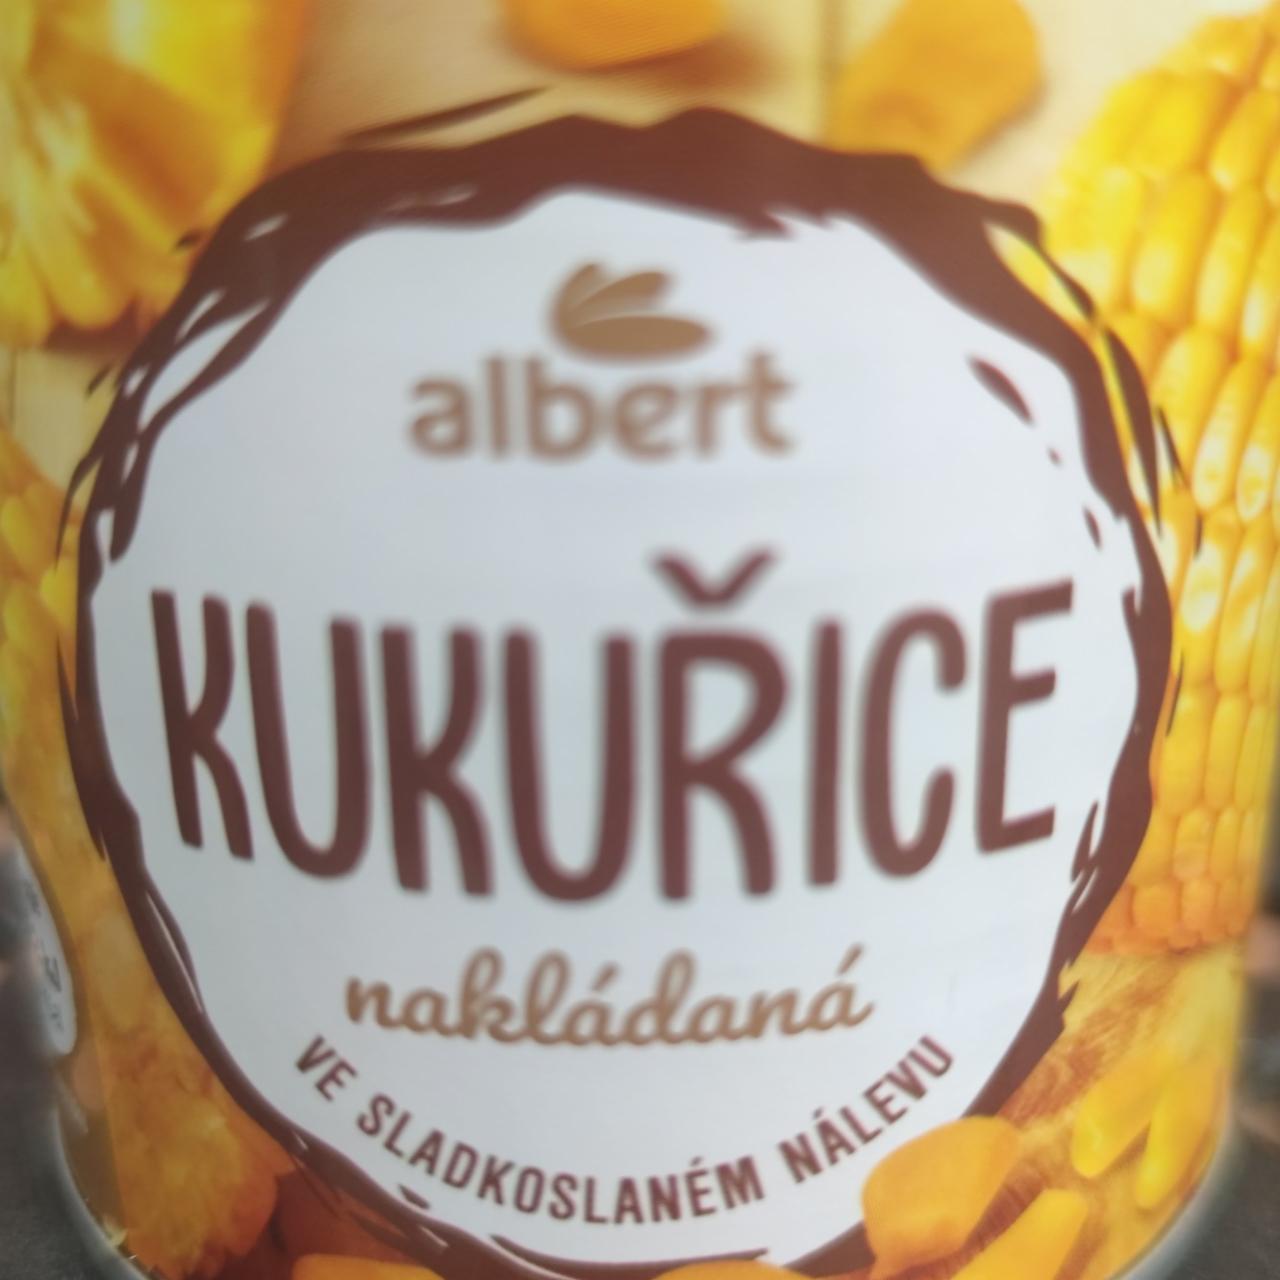 Fotografie - Kukuřice nakládaná ve sladkoslaném nálevu Albert